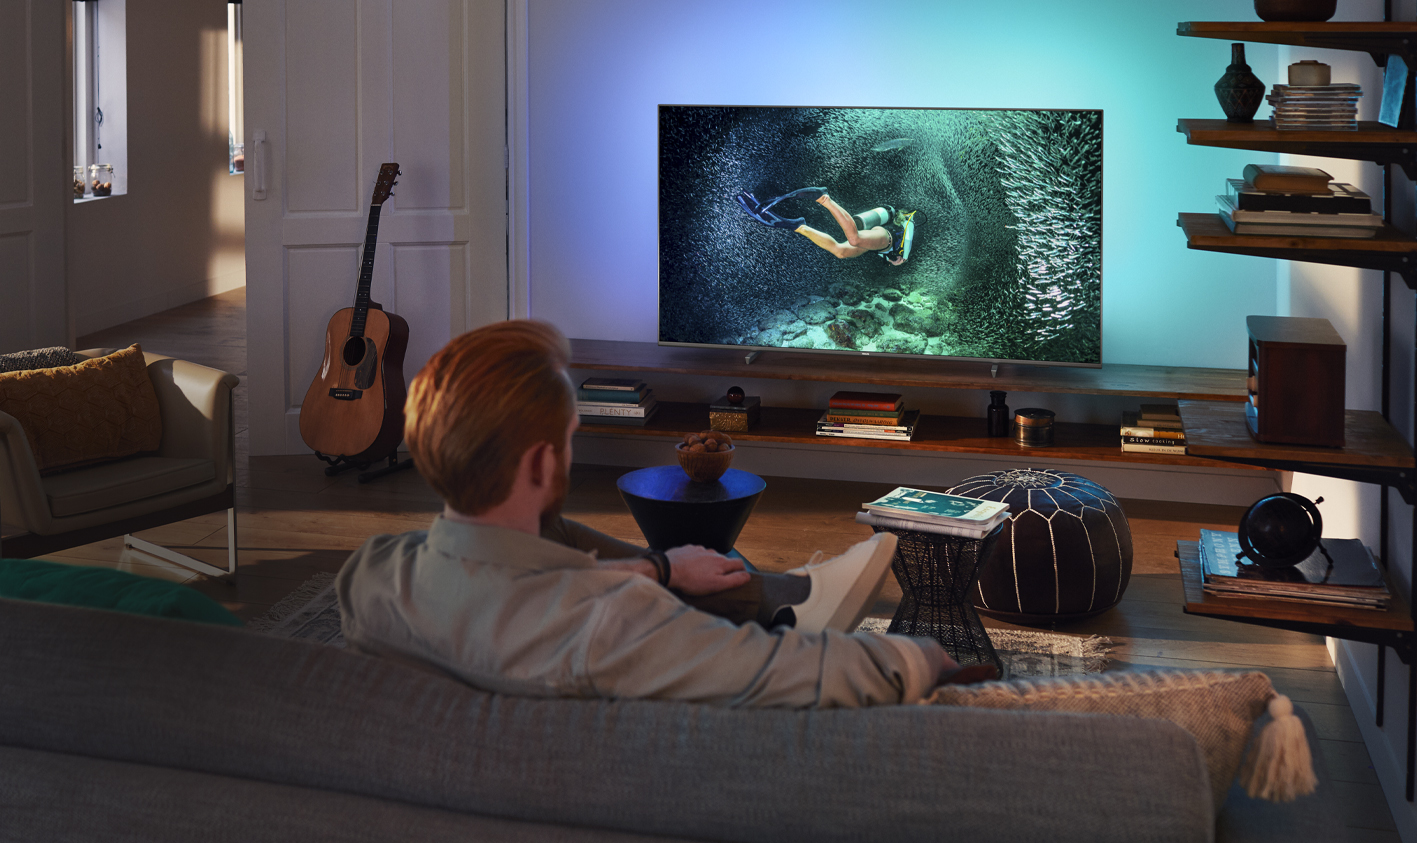 Muškarac slikan sa leđa sedi u dnevnoj sobi i gleda TV sa Ambilight osvetljenjem